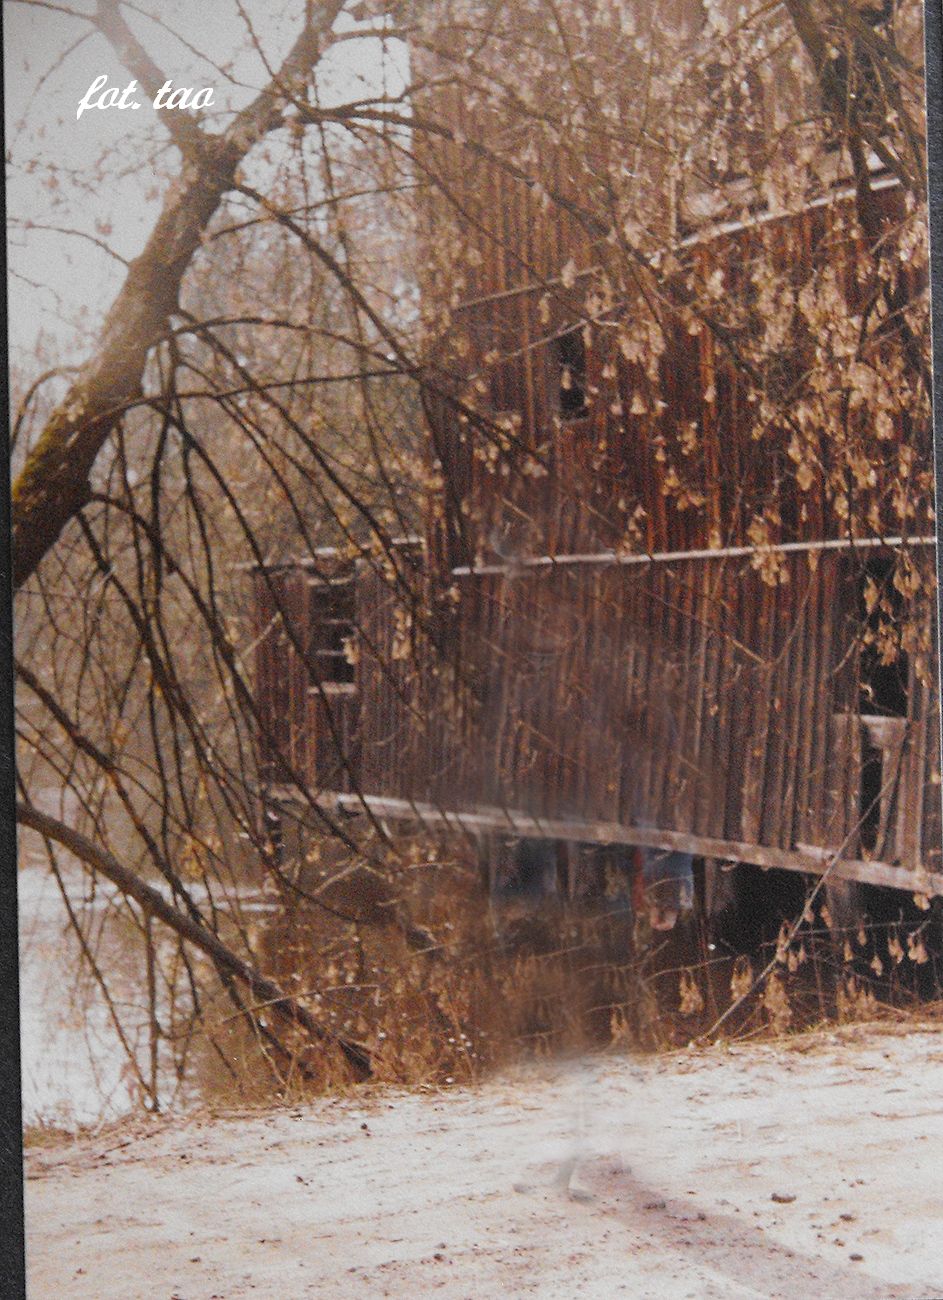 Myn w Mieszczku, widok od strony rzeki Skrwy, 1991 r.